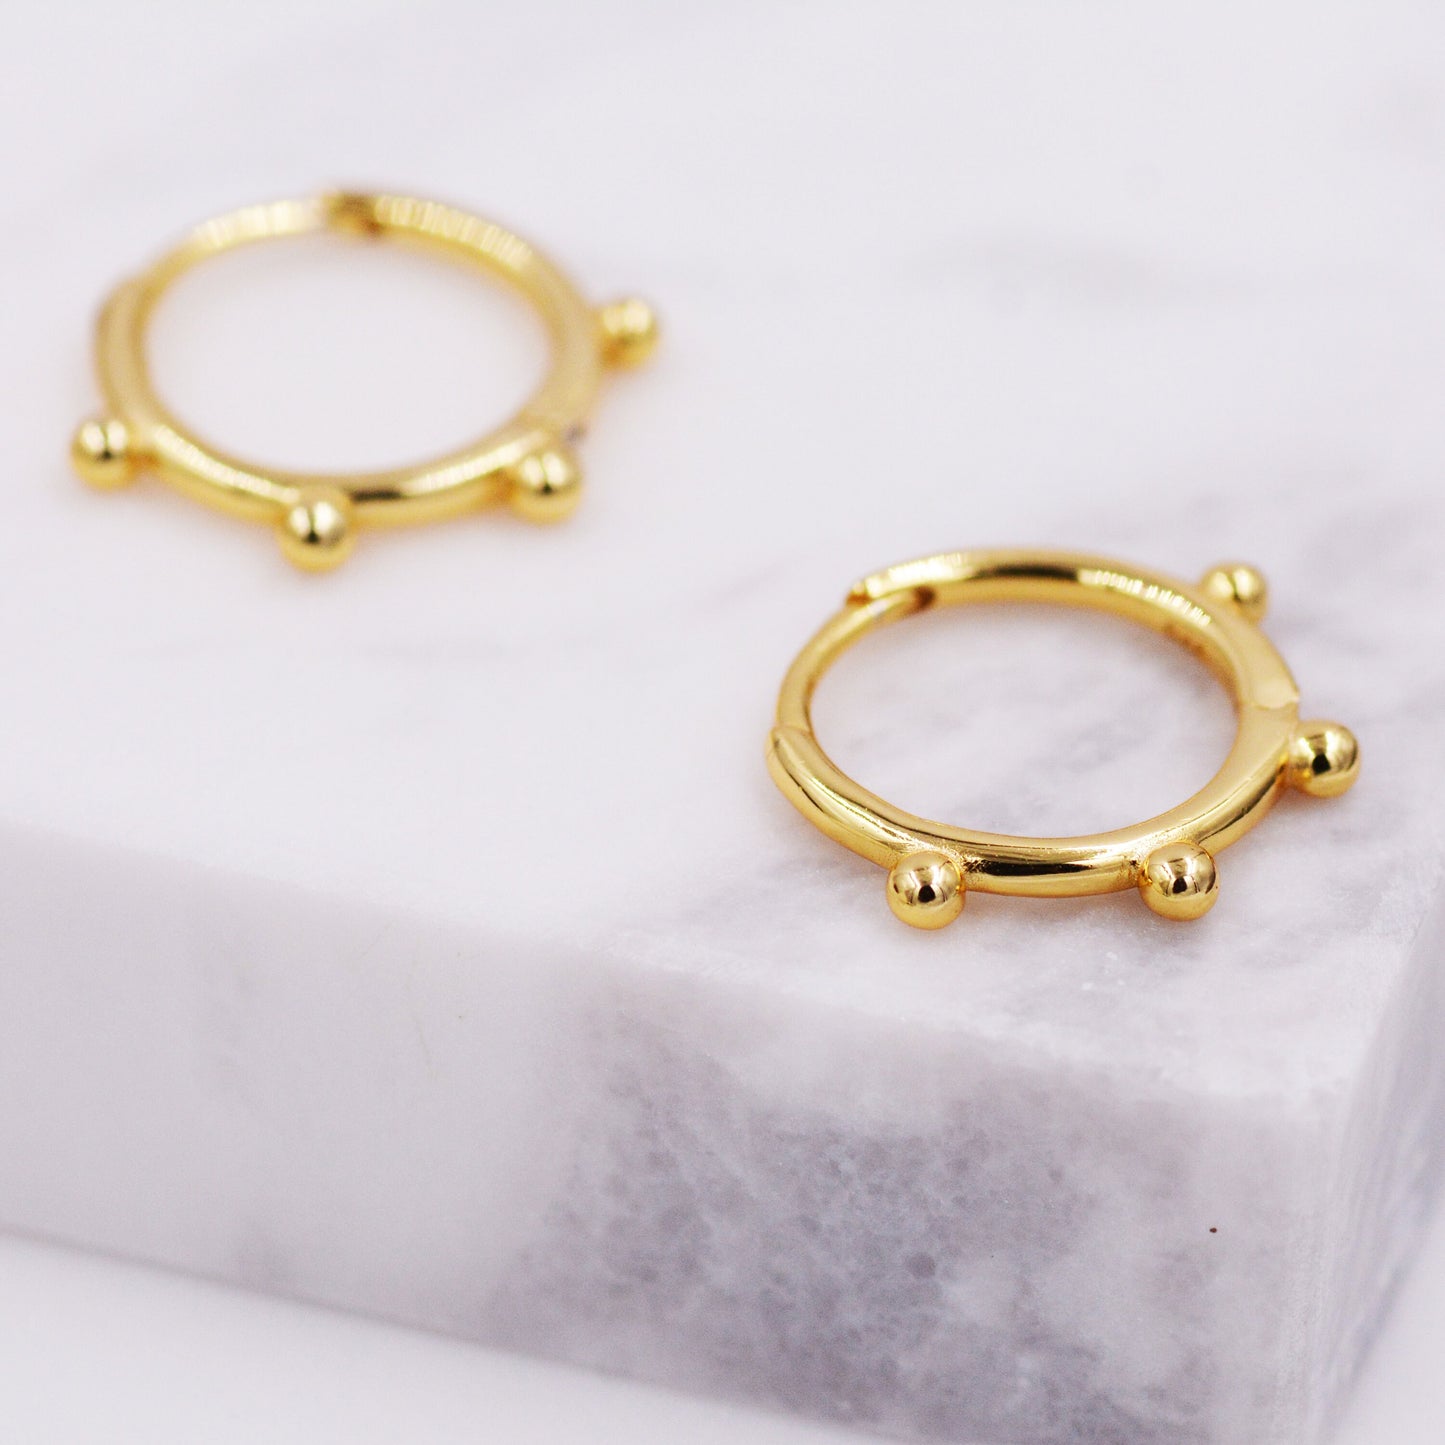 Sterling Silver Beaded Huggie Hoop Earrings, Gold or Silver, Minimalist Geometric Design